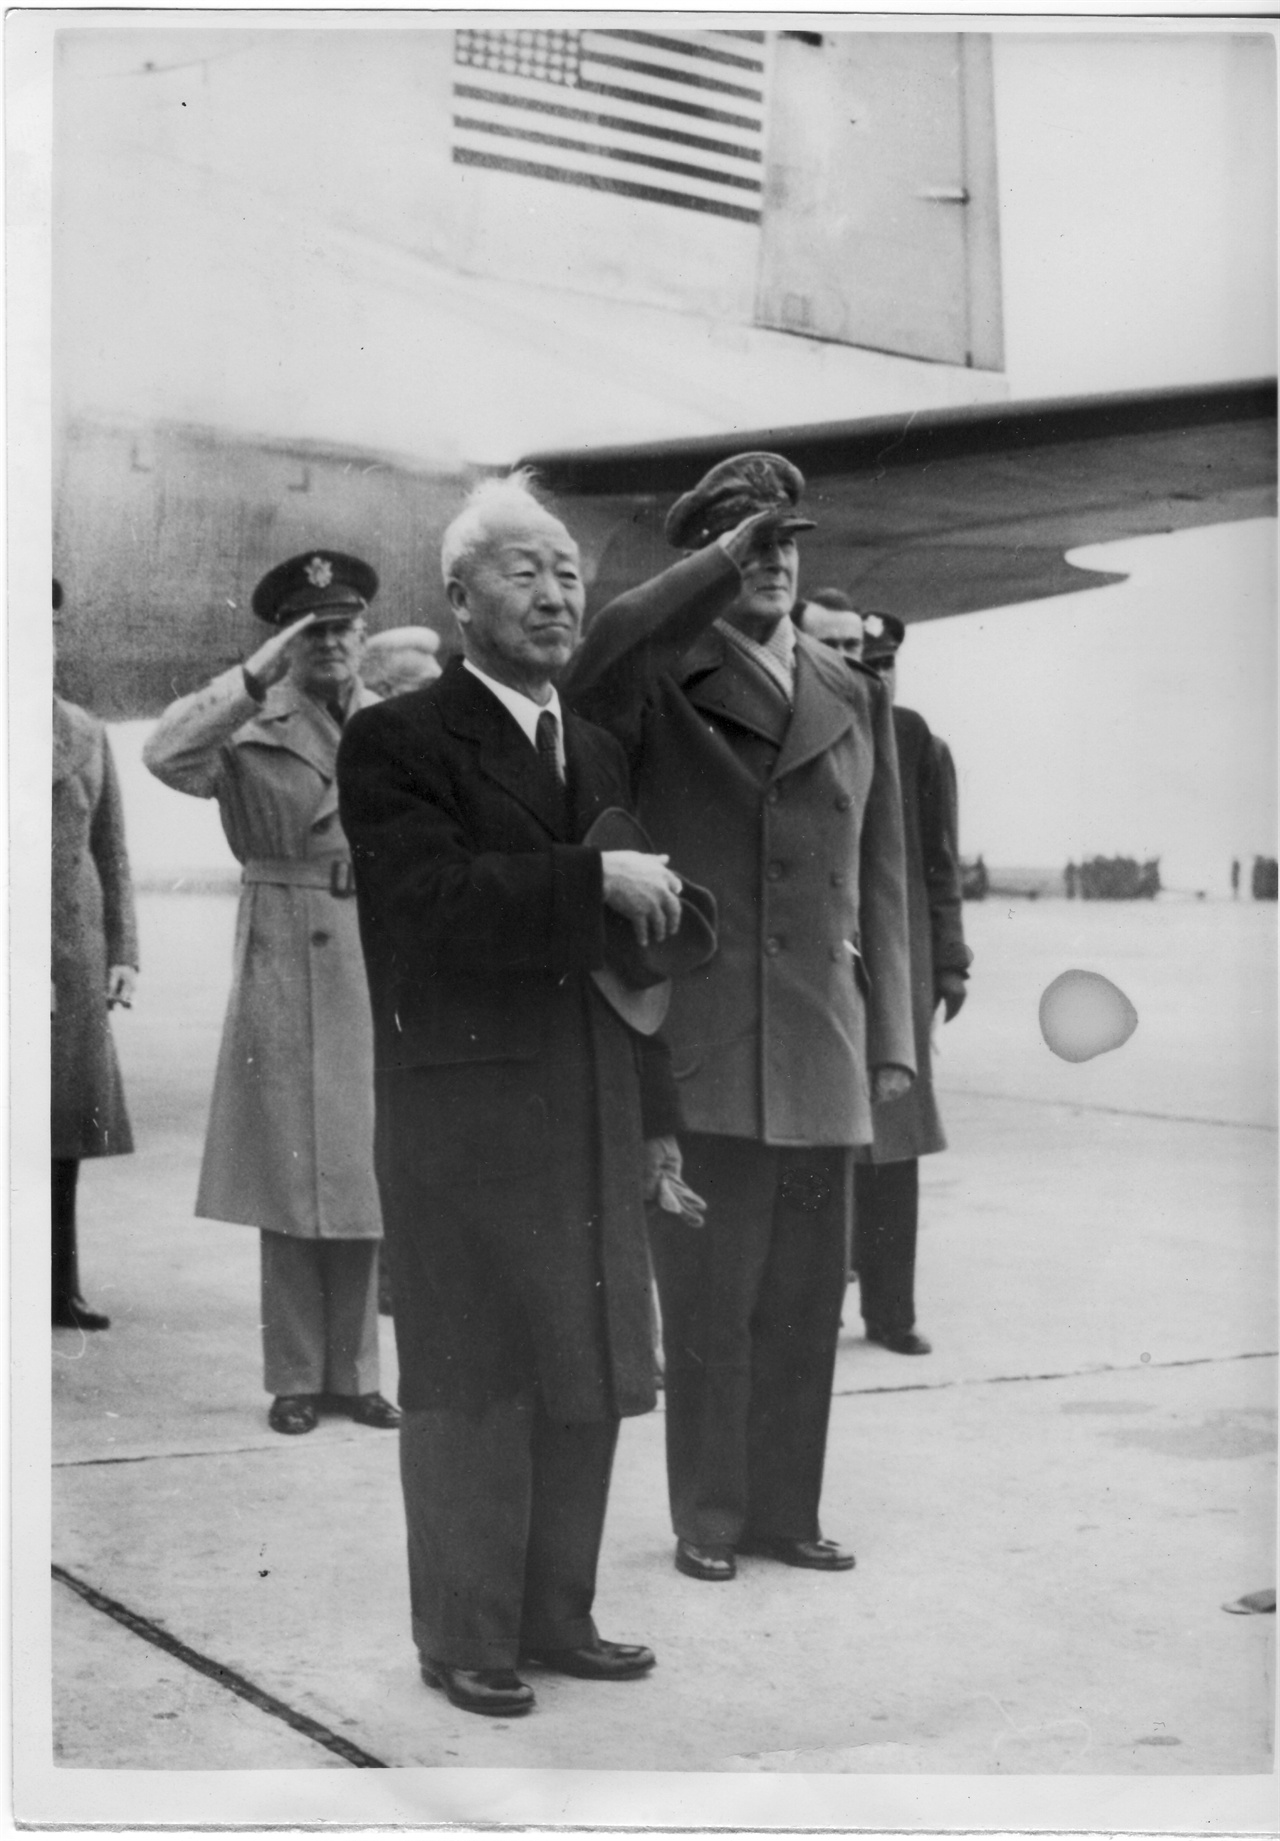  1950. 2. 일본 도쿄. 맥아더 원수가 하네다 공항에서 이승만 대통령을 영접하면서 양국 국기에 경례를 하고 있다.